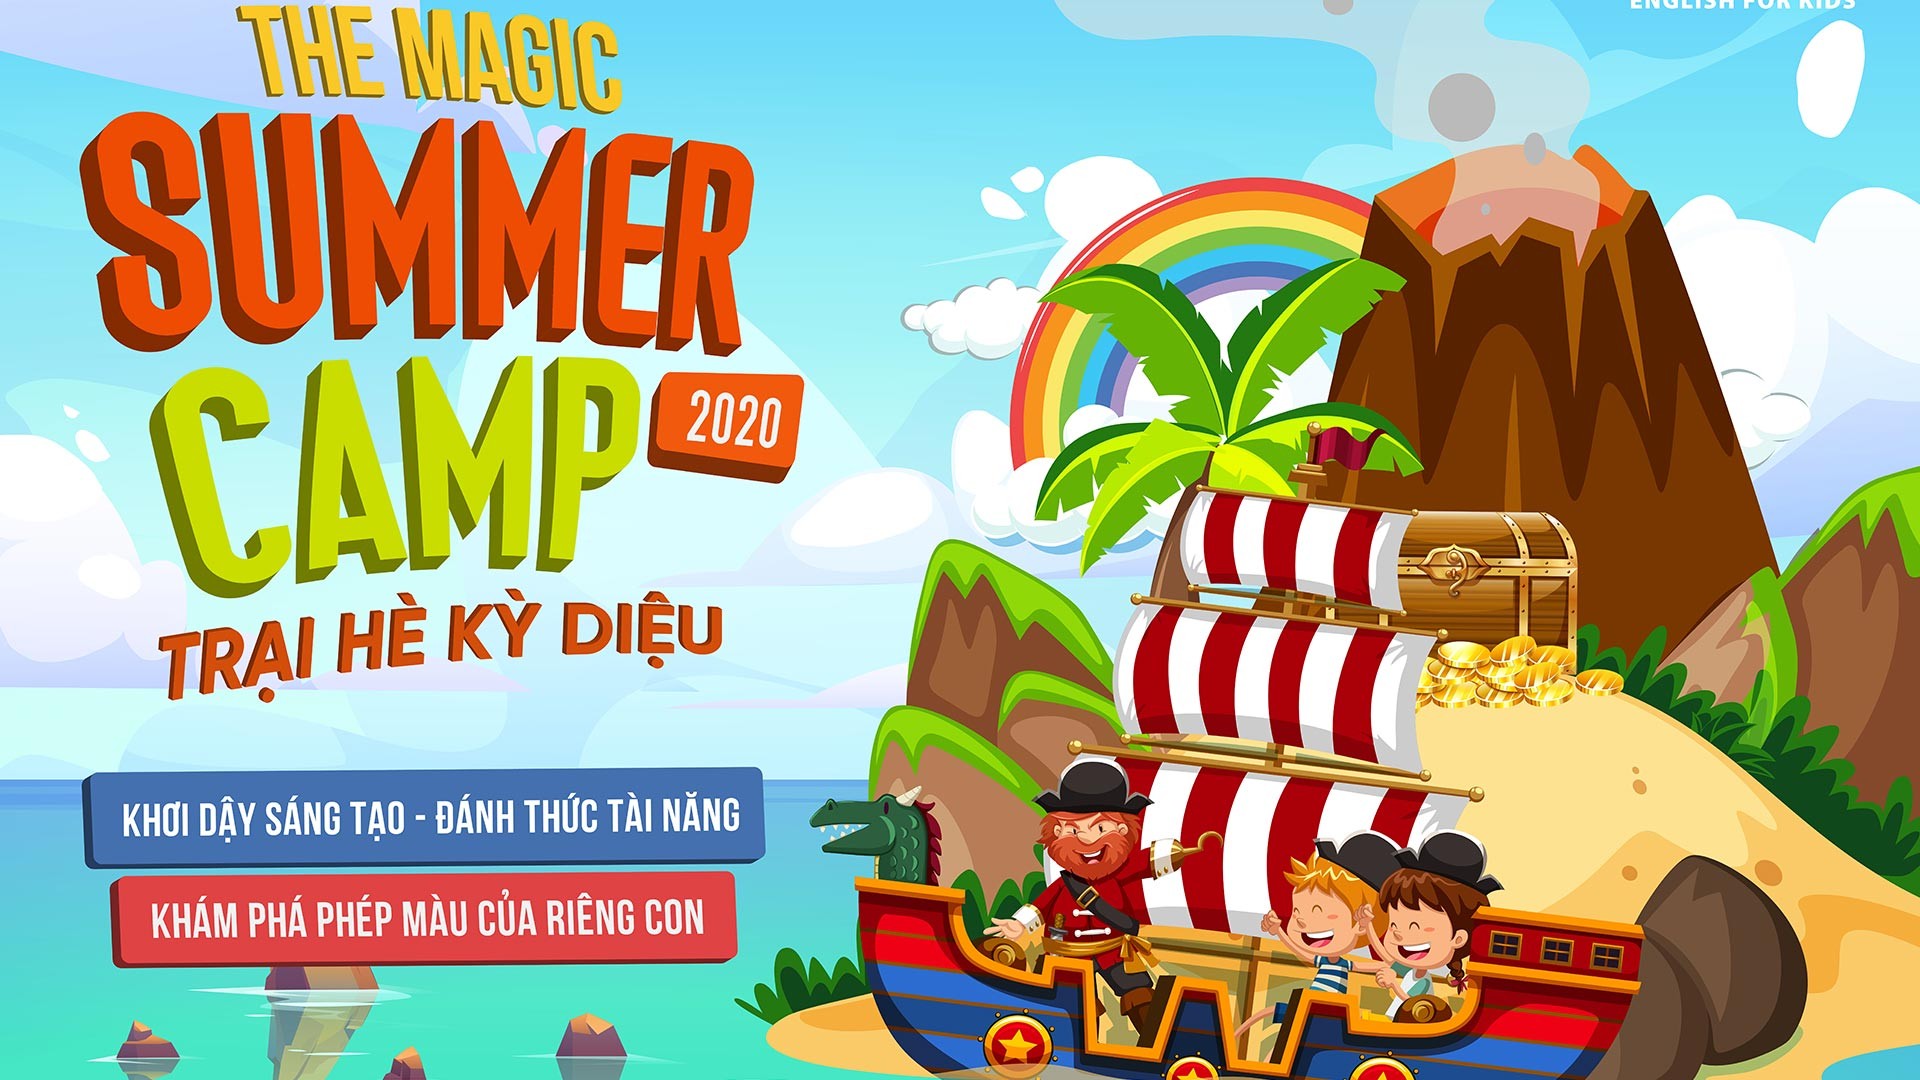 Khám phá chuyến phiêu lưu hấp dẫn tại Trại Hè Kỳ Diệu – The Magic Summer Camp 2020 